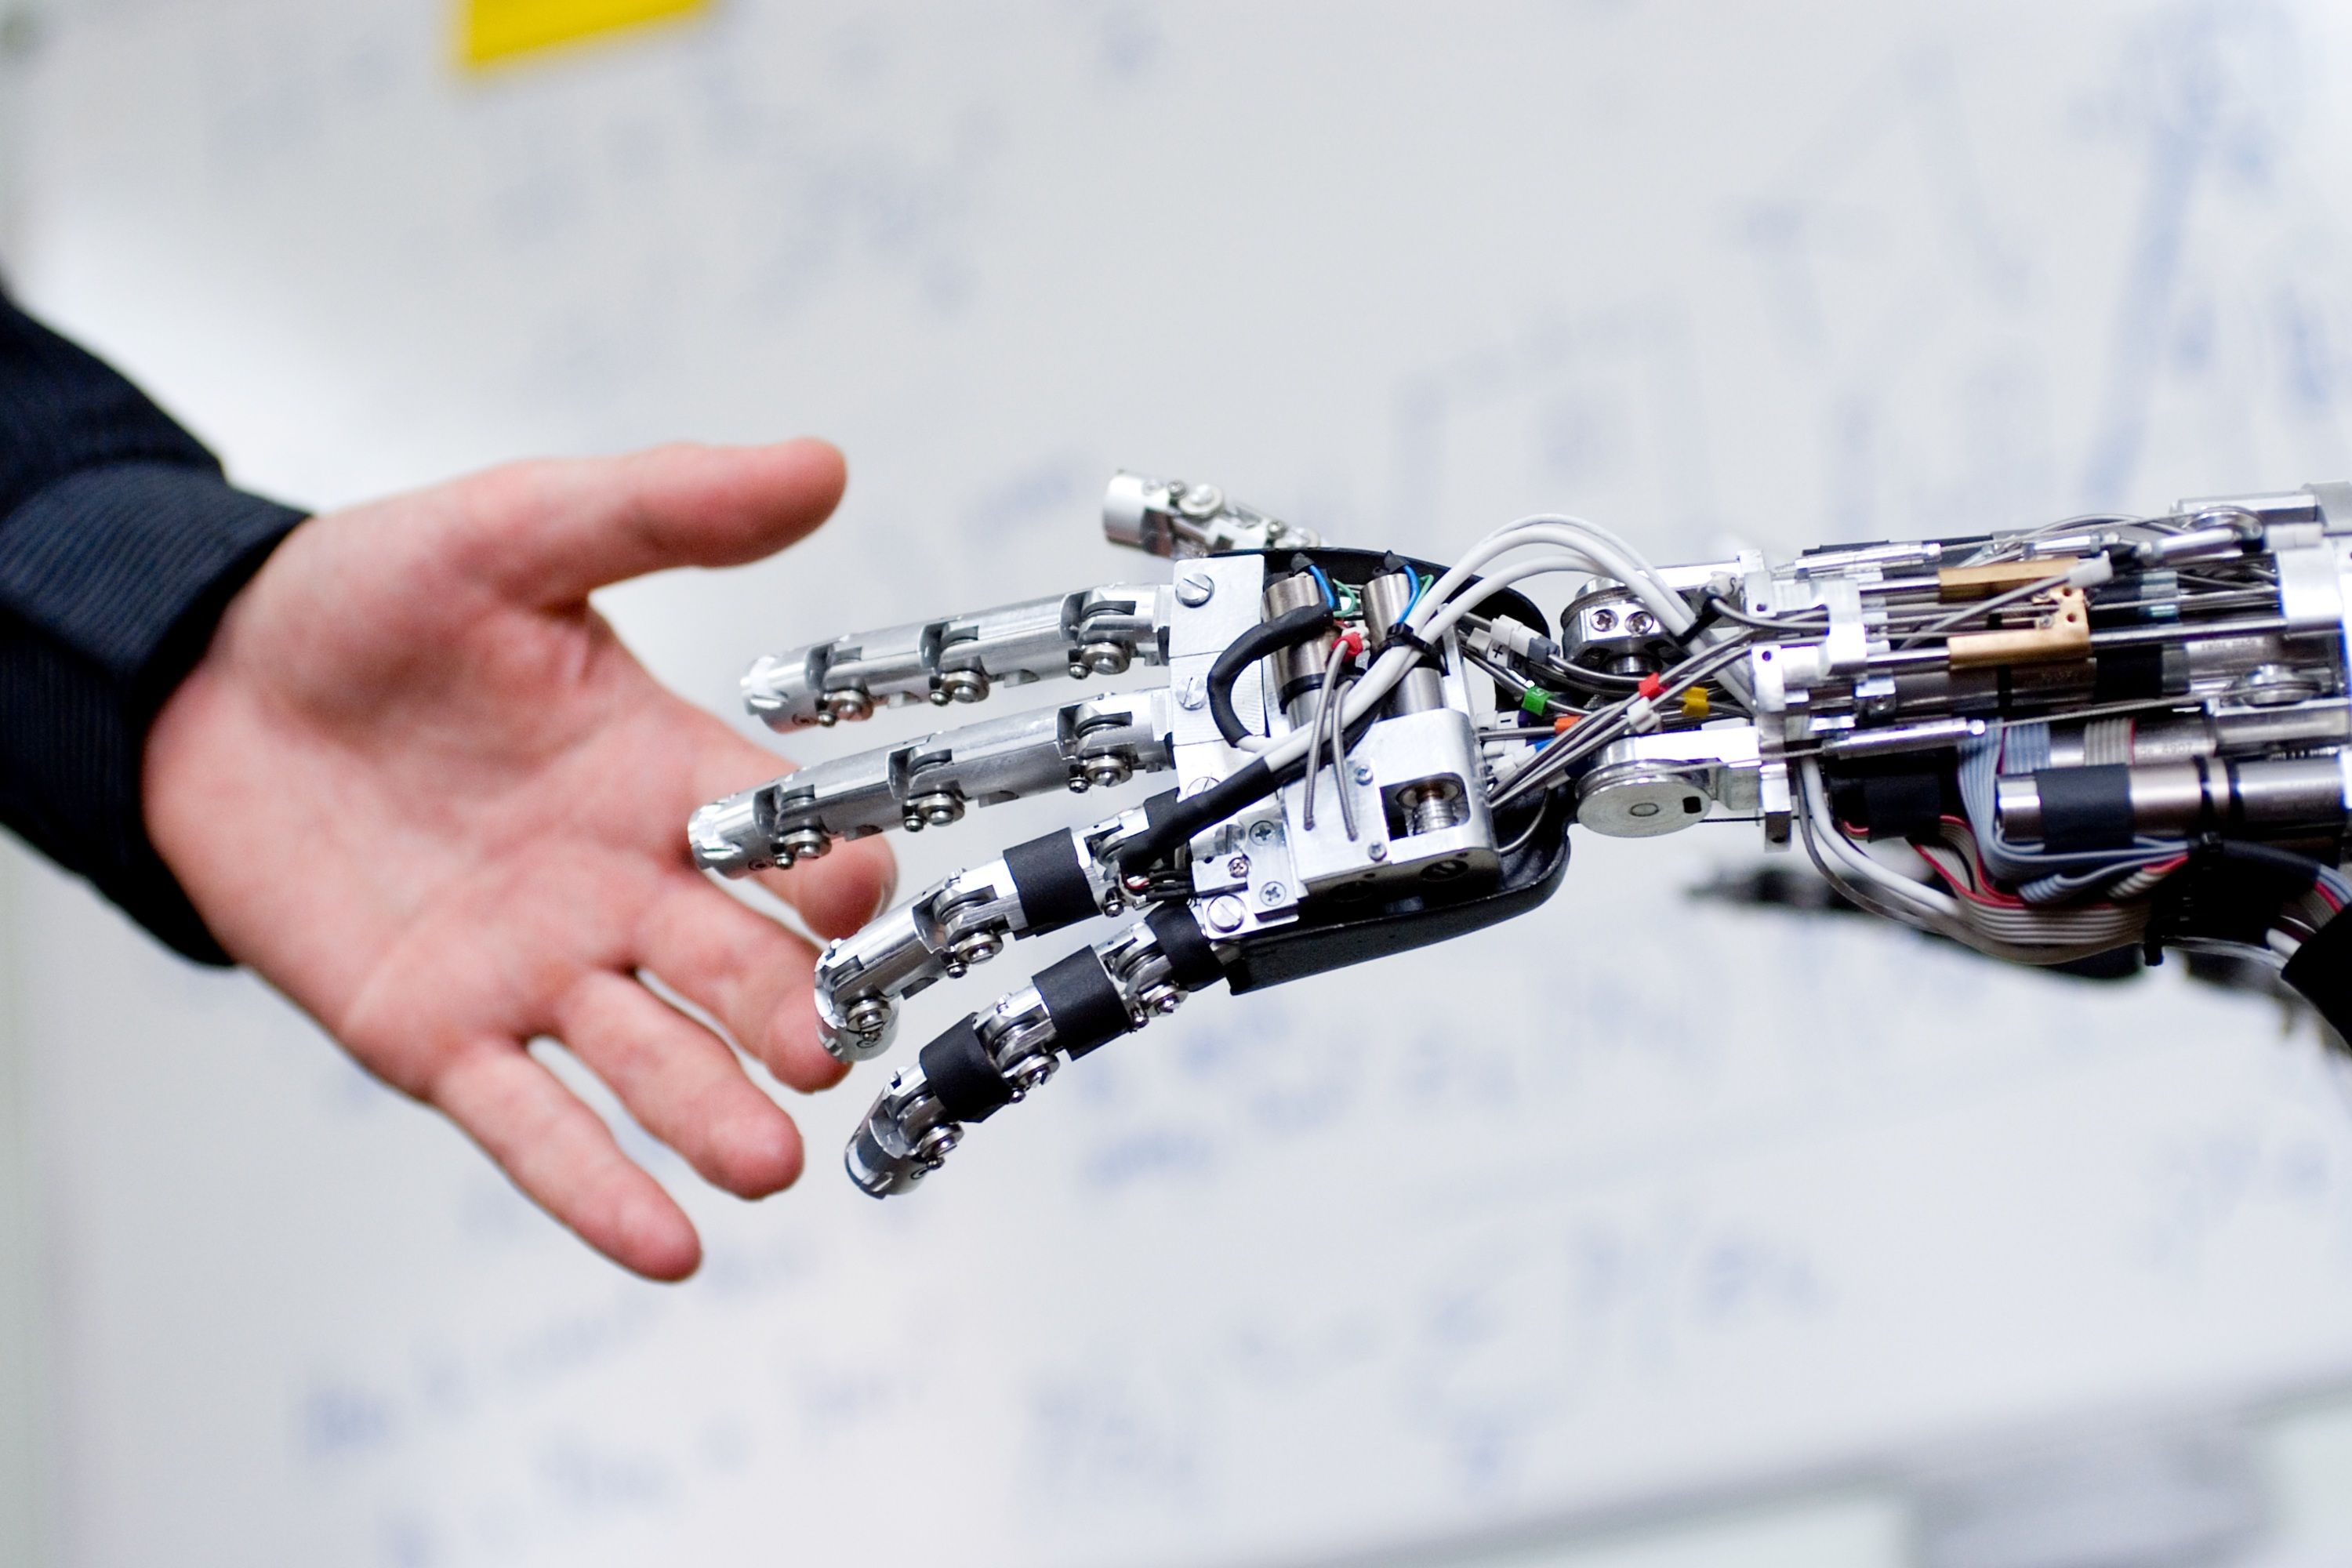 Human and Biological Robotics